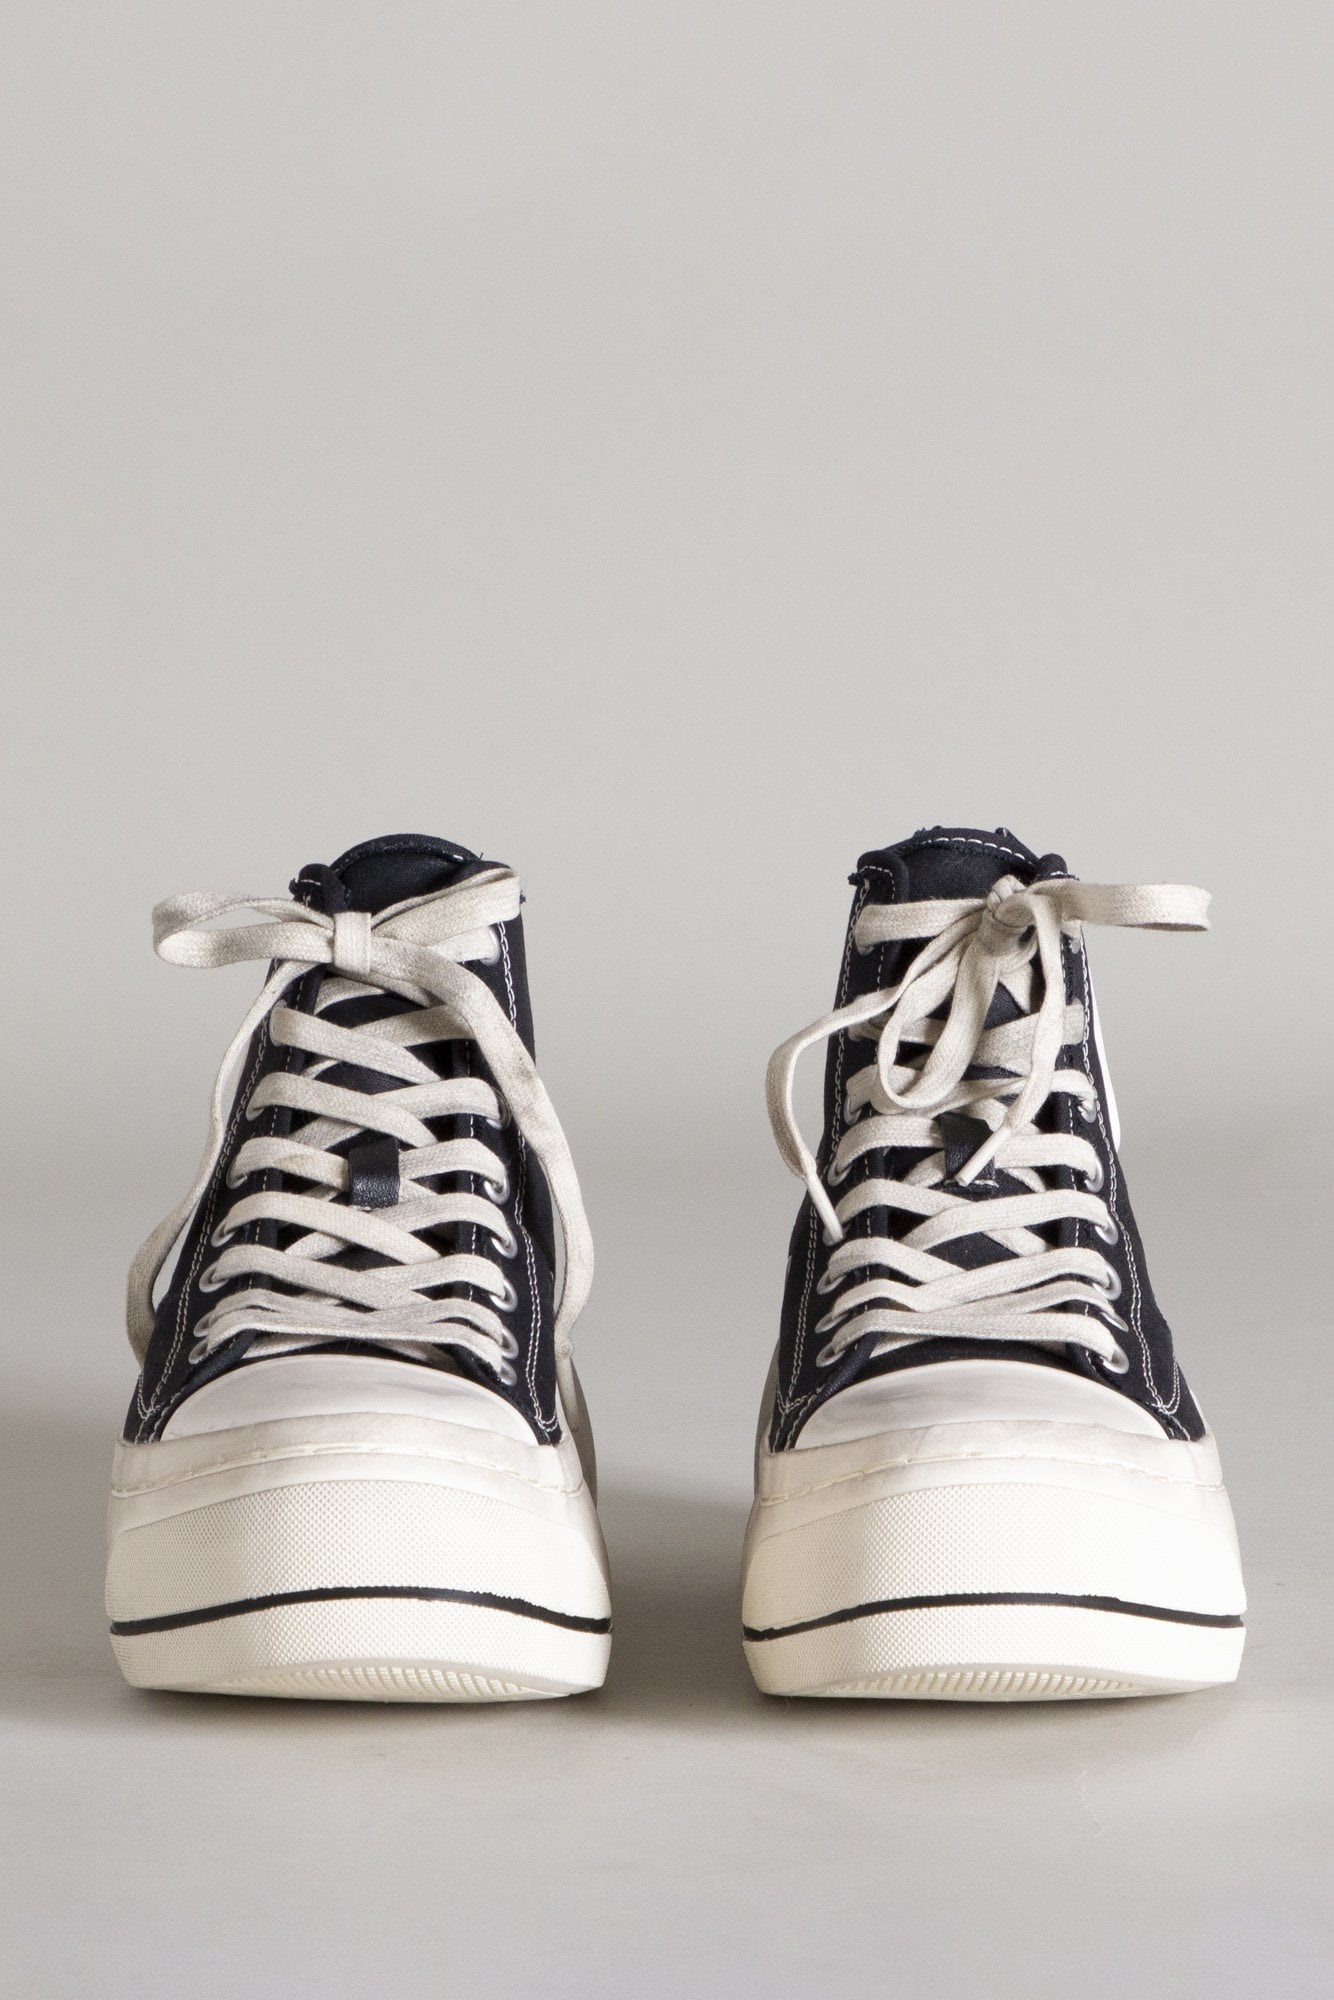 Kurt High Top Sneaker - Black | R13 Denim Official Site - 2